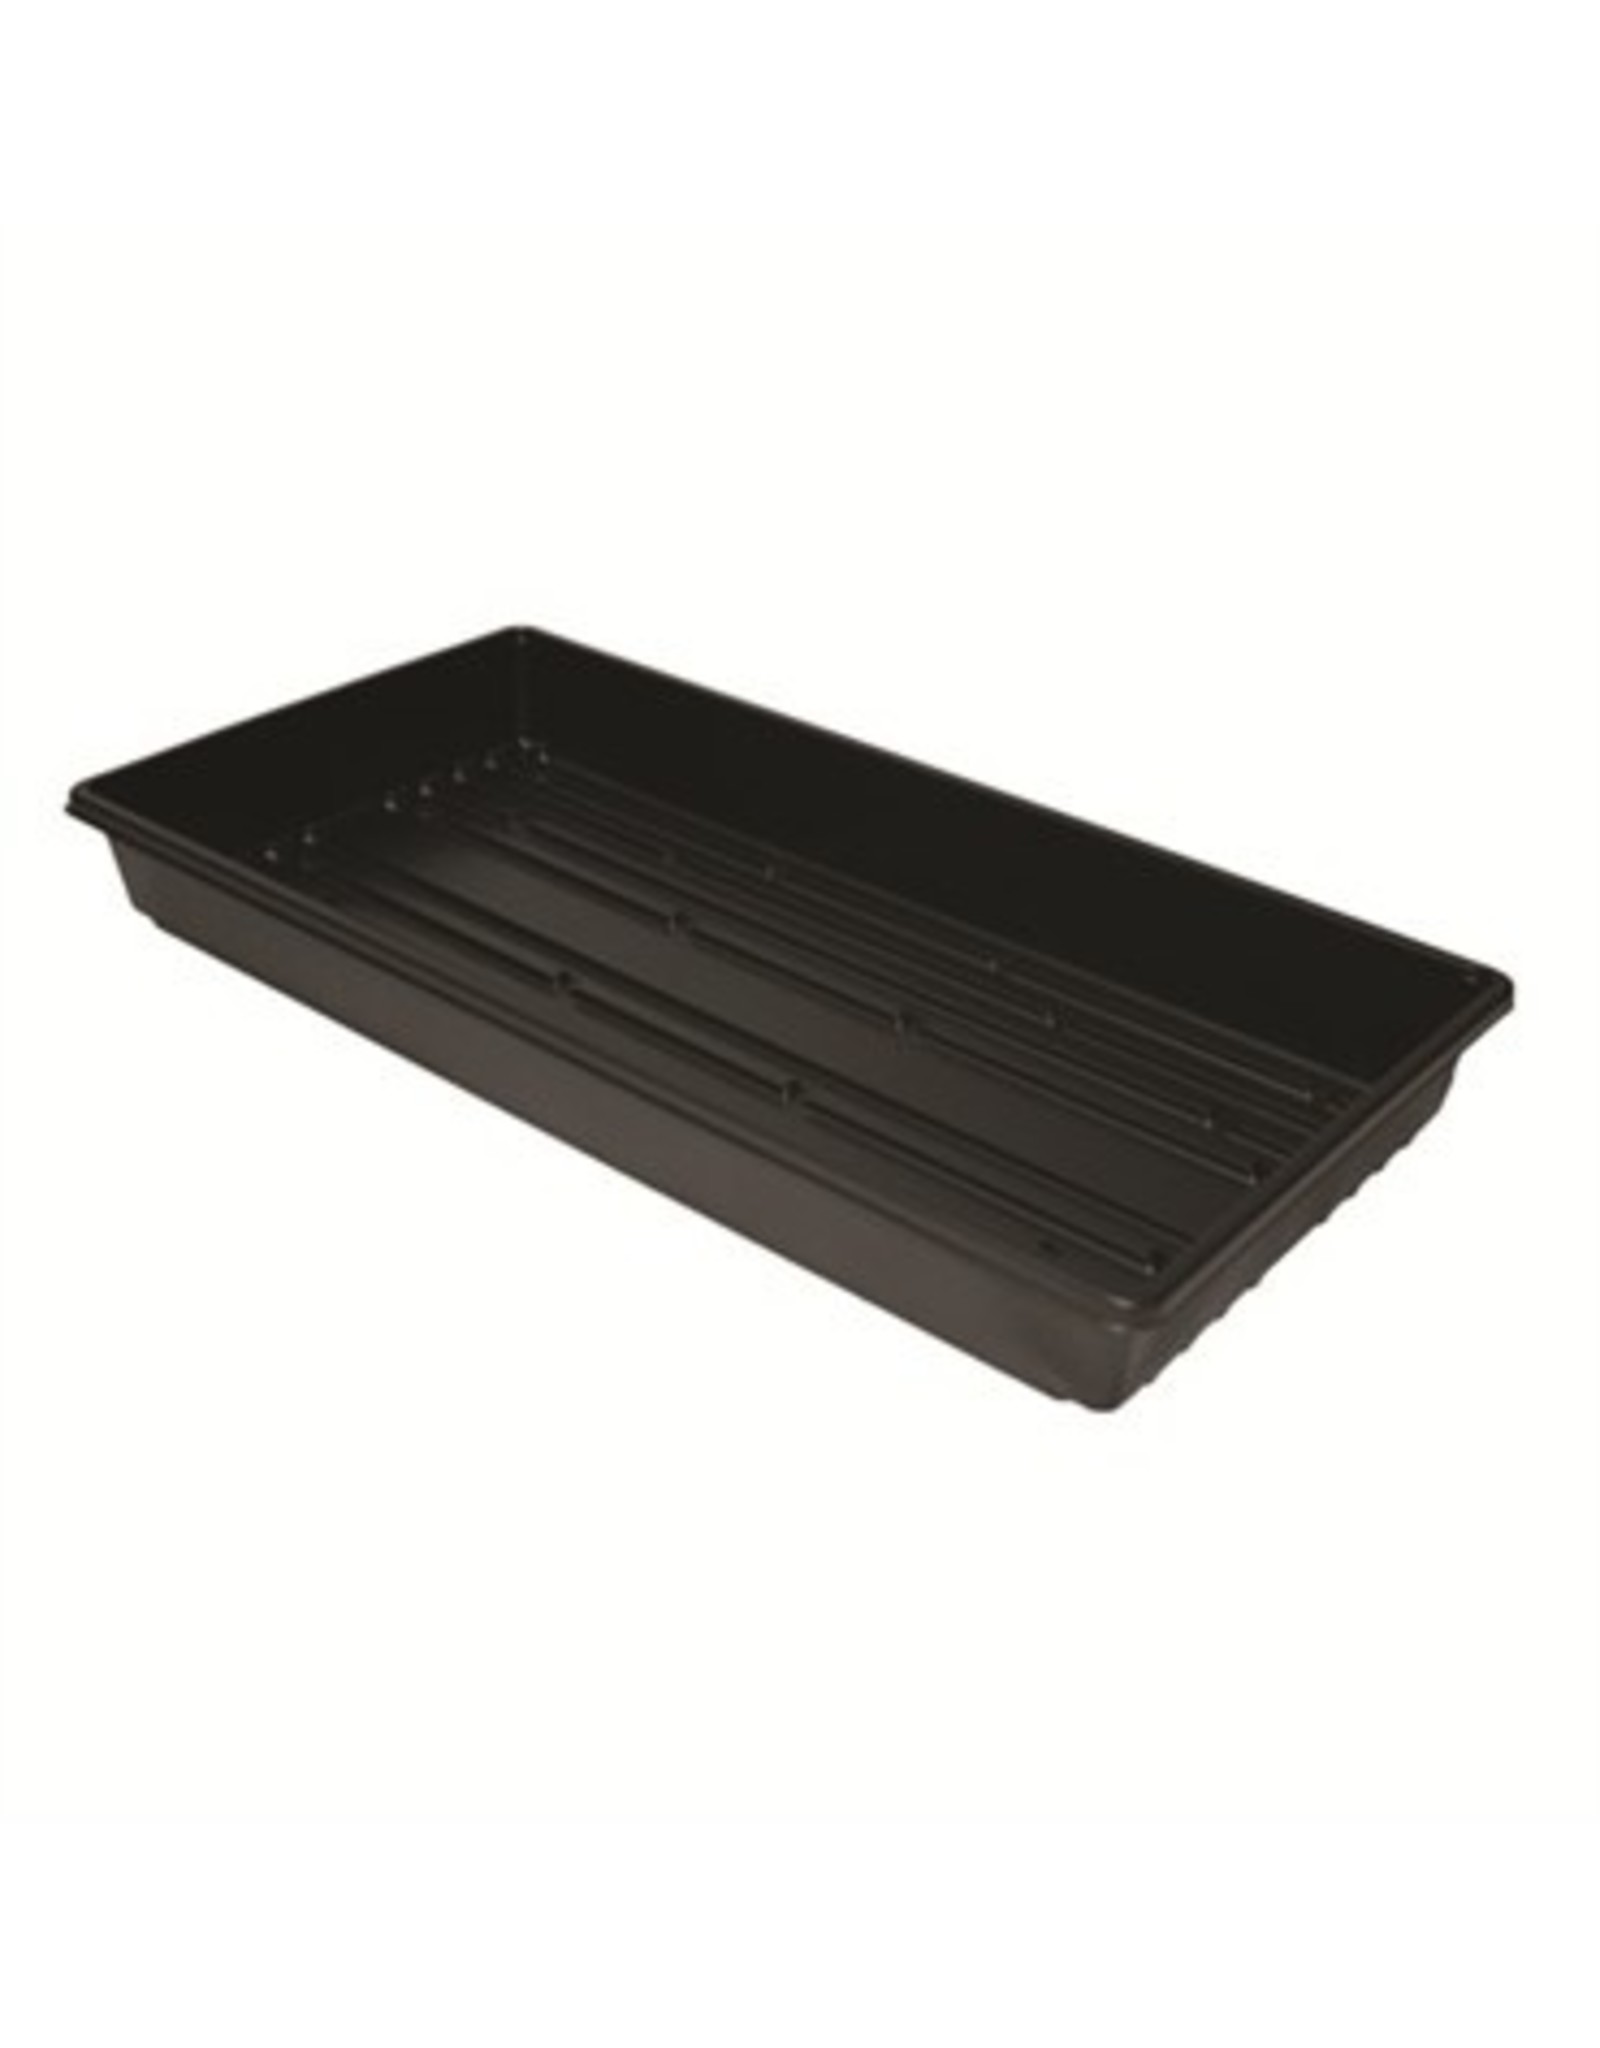 Flat Tray 10 x 20 - No Holes Single